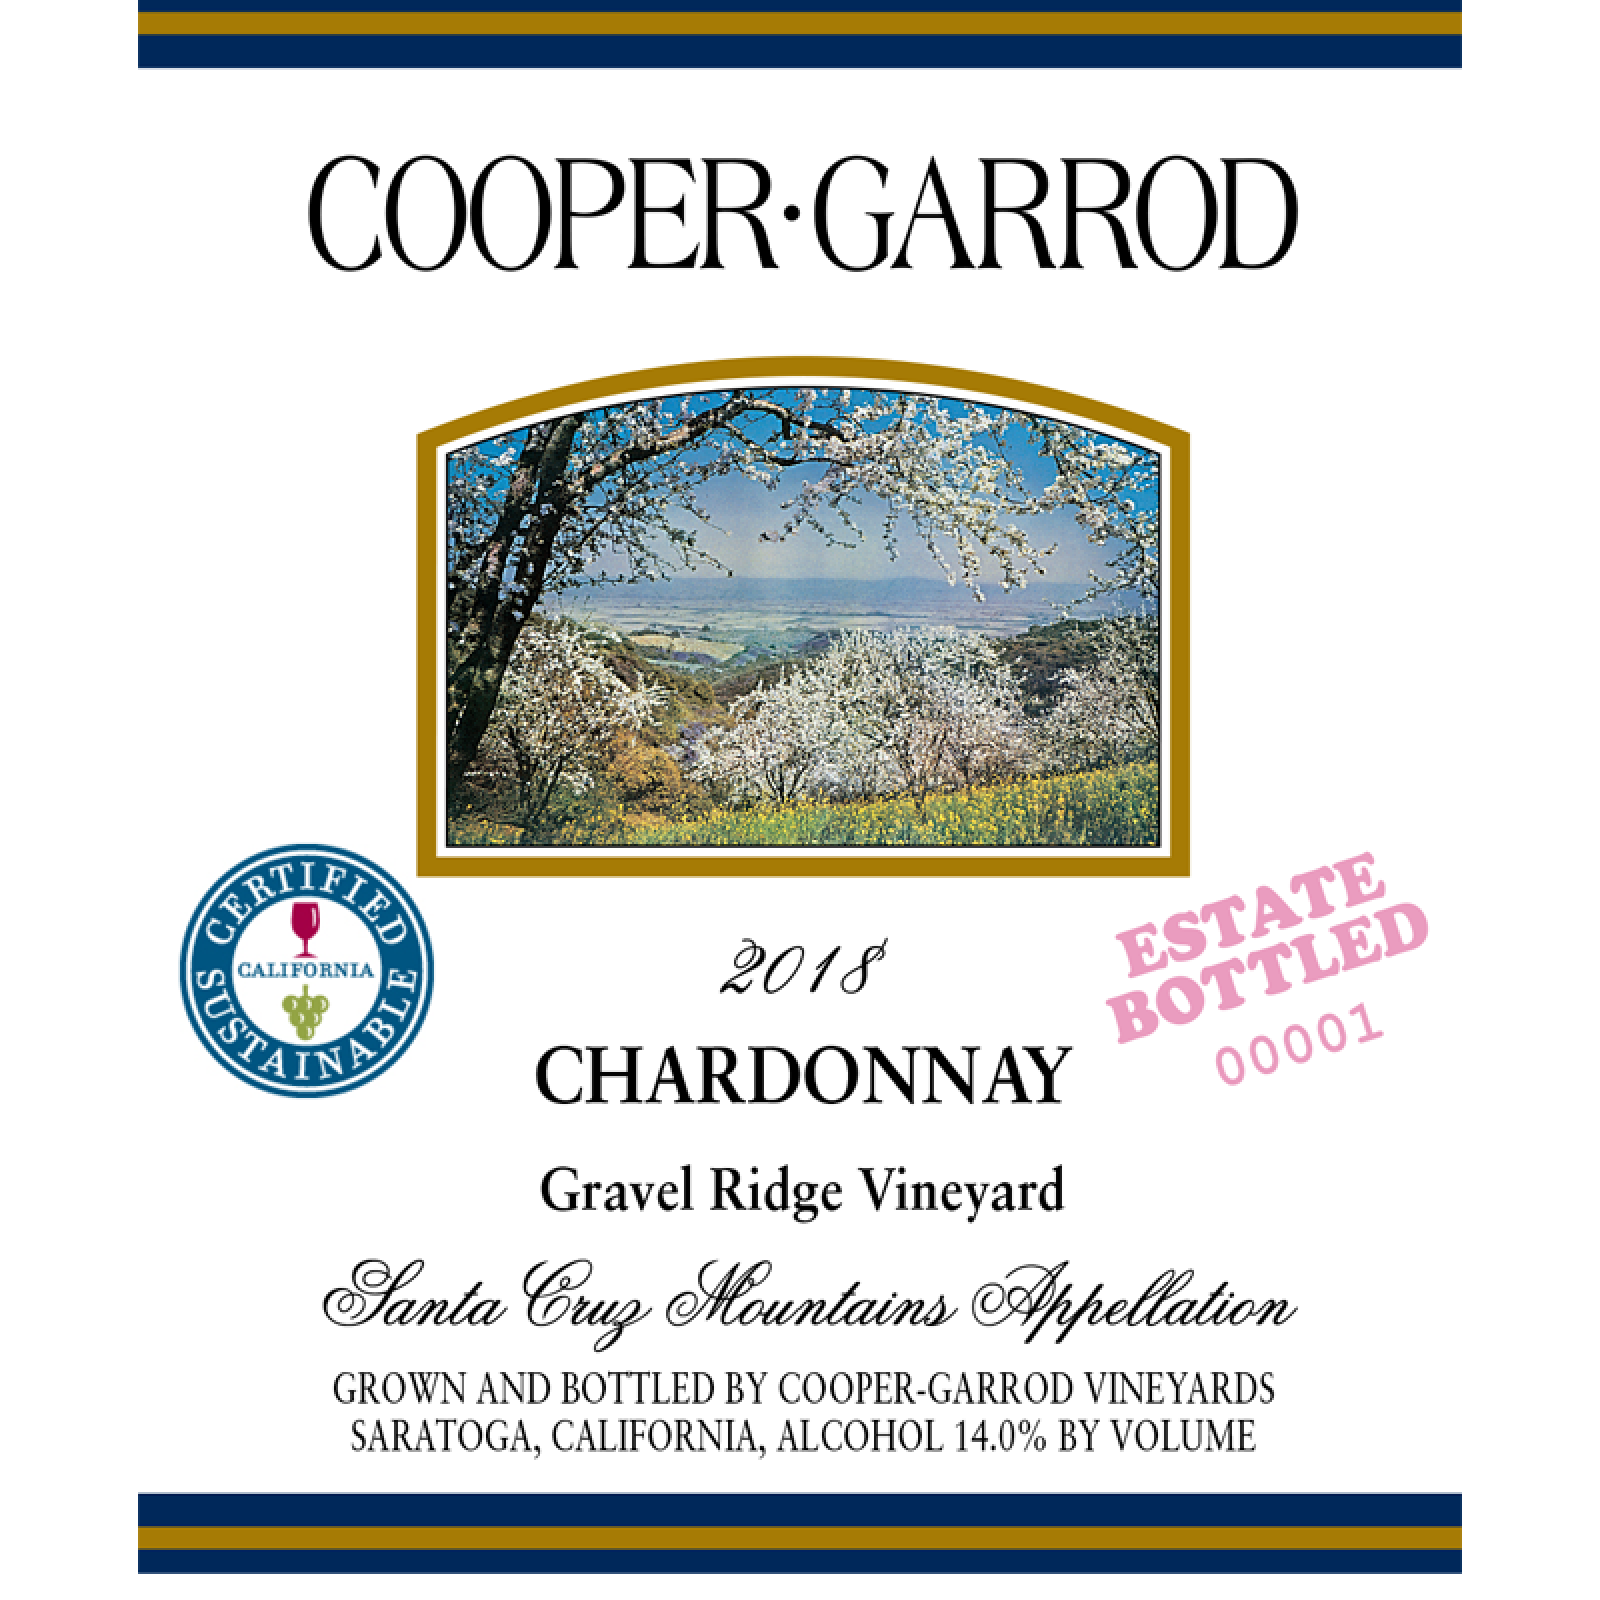 Cooper Garrod Chardonnay 2018